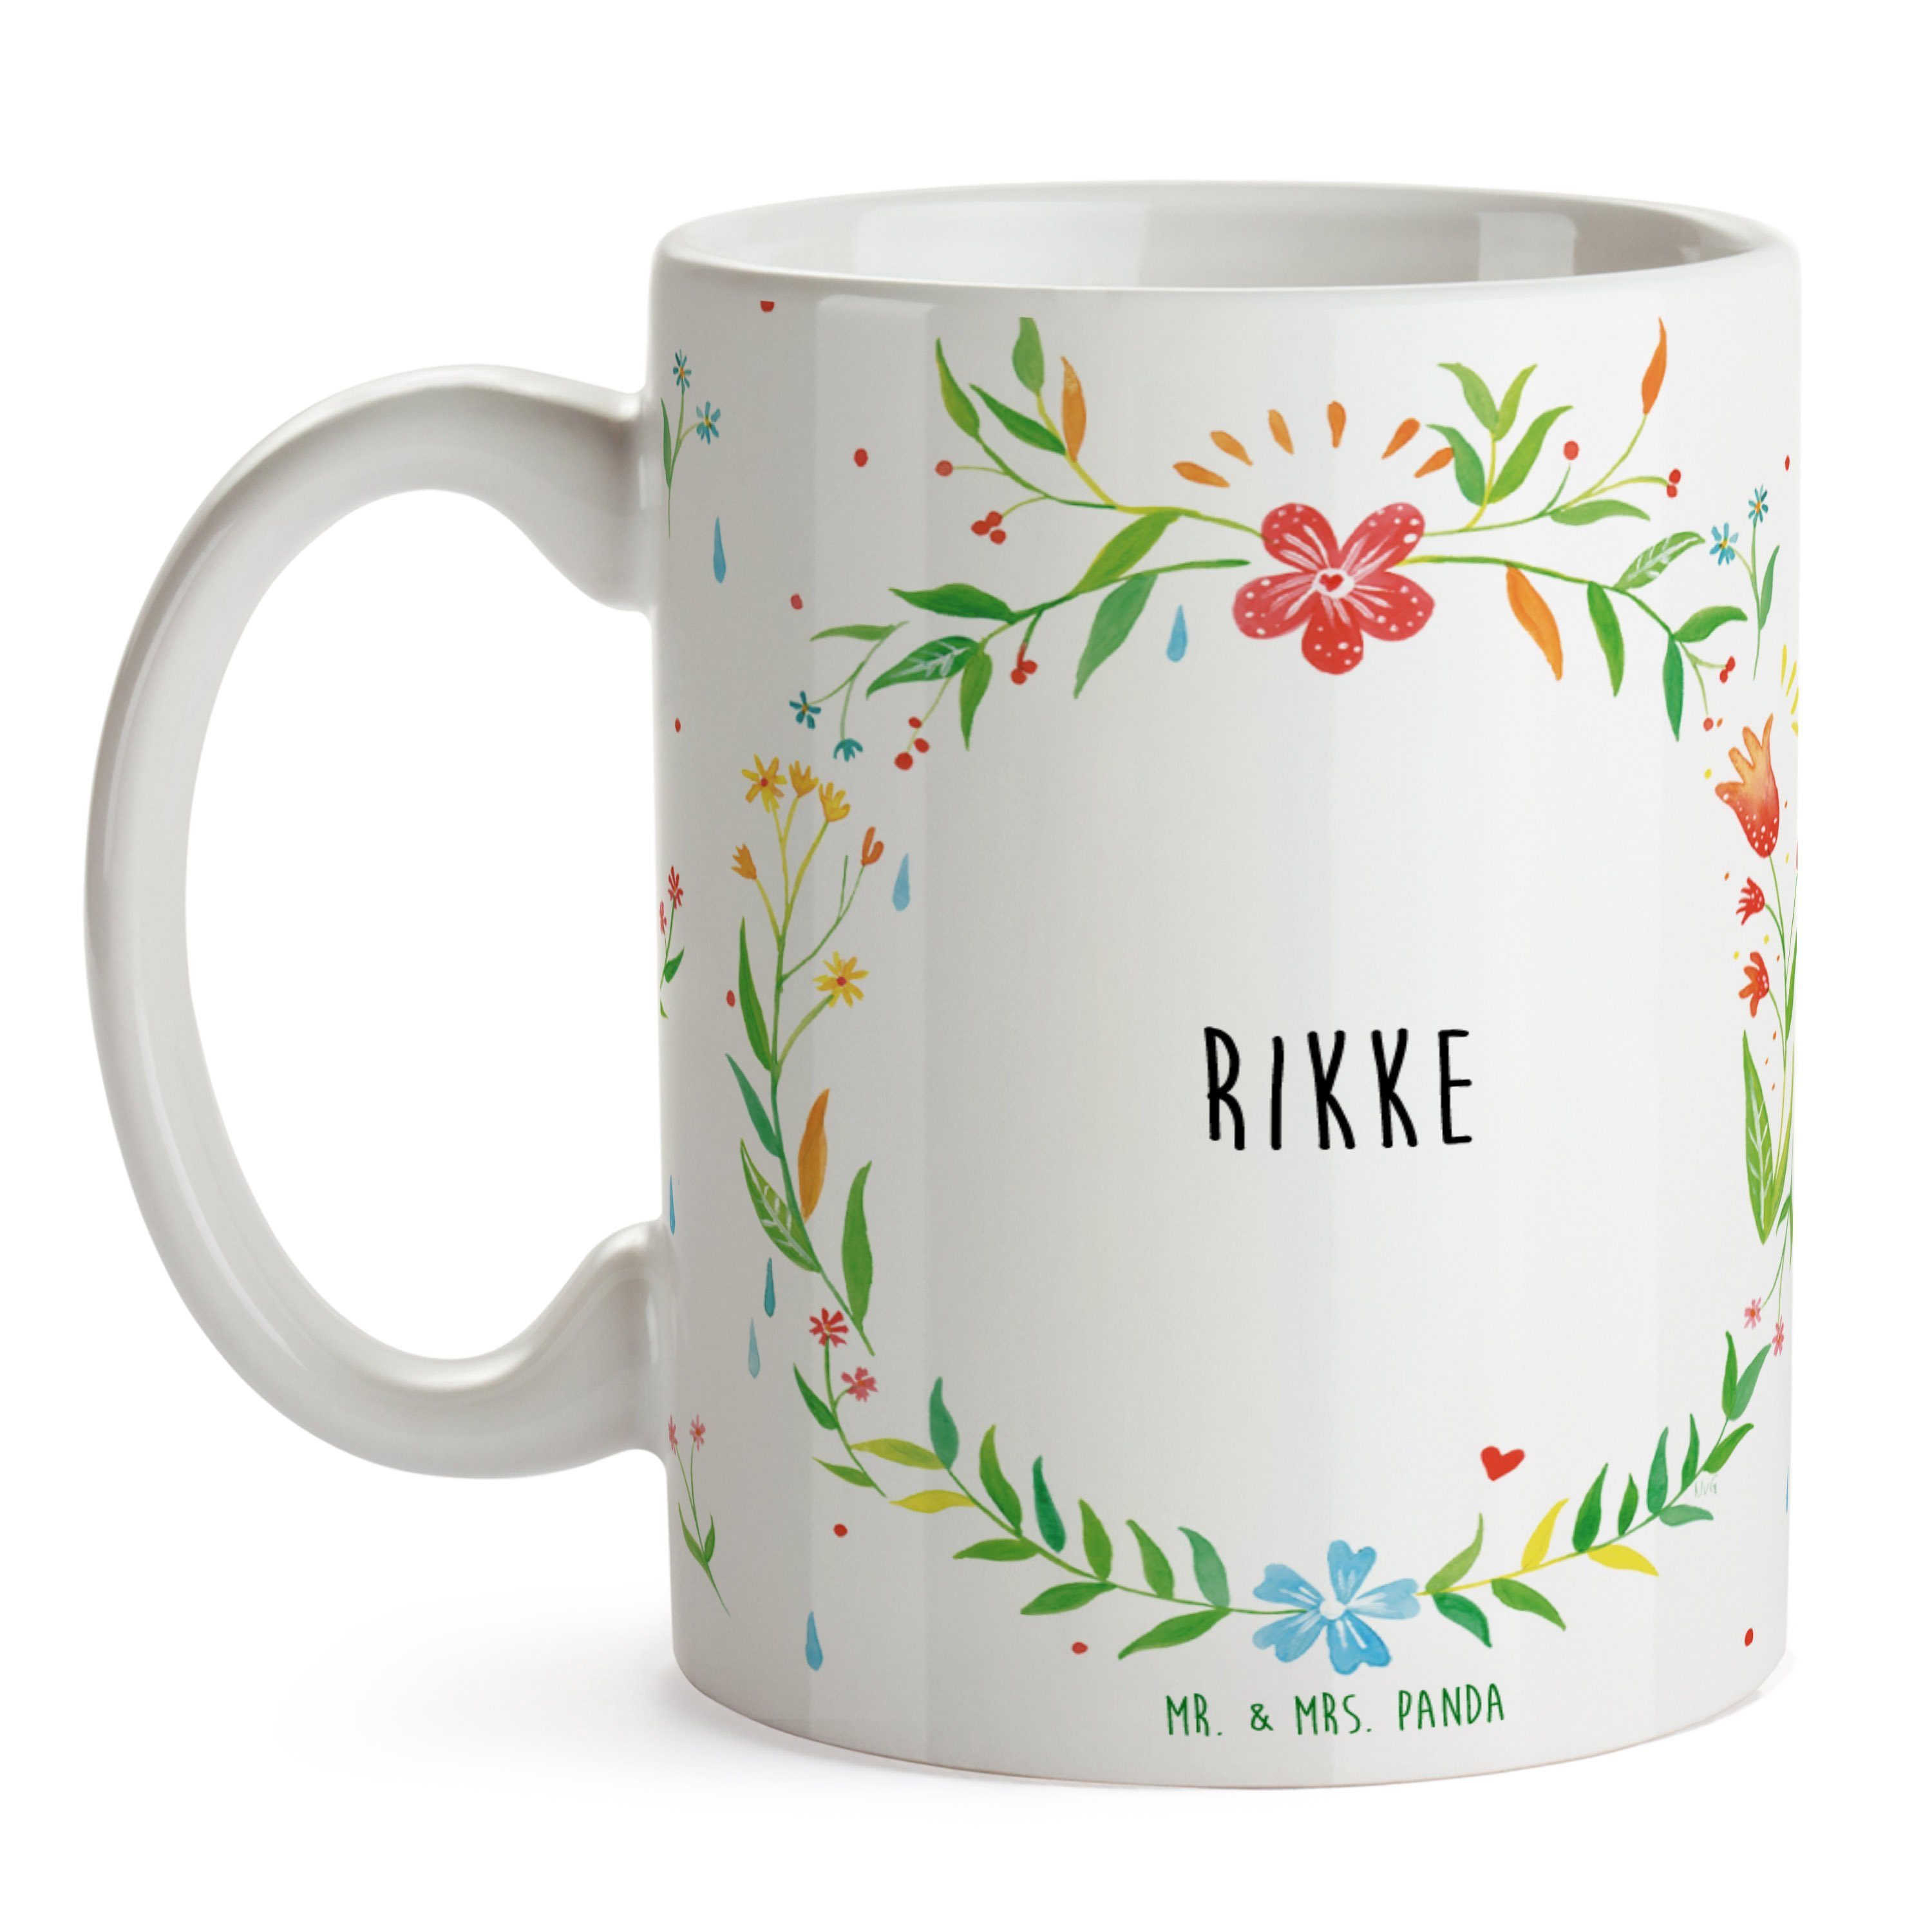 Mr. & Mrs. Panda Tasse Kaffeetasse, - Porzellantasse, Rikke Keramik Kerami, Geschenk Geschenk, Tasse